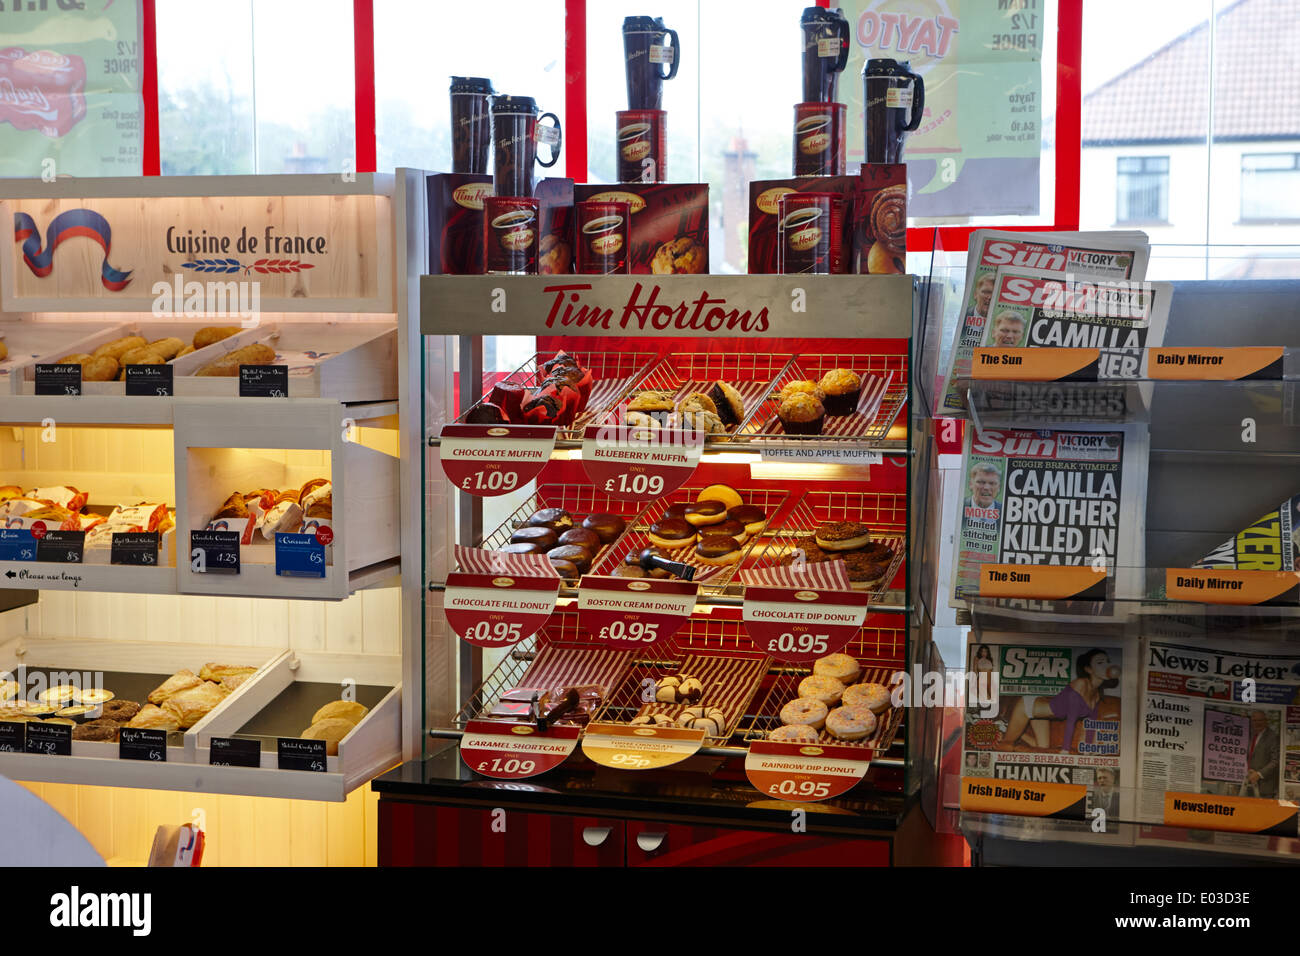 Tim Hortons Donuts anzeigen in einem Supermarkt Tankstelle in Nordirland Stockfoto